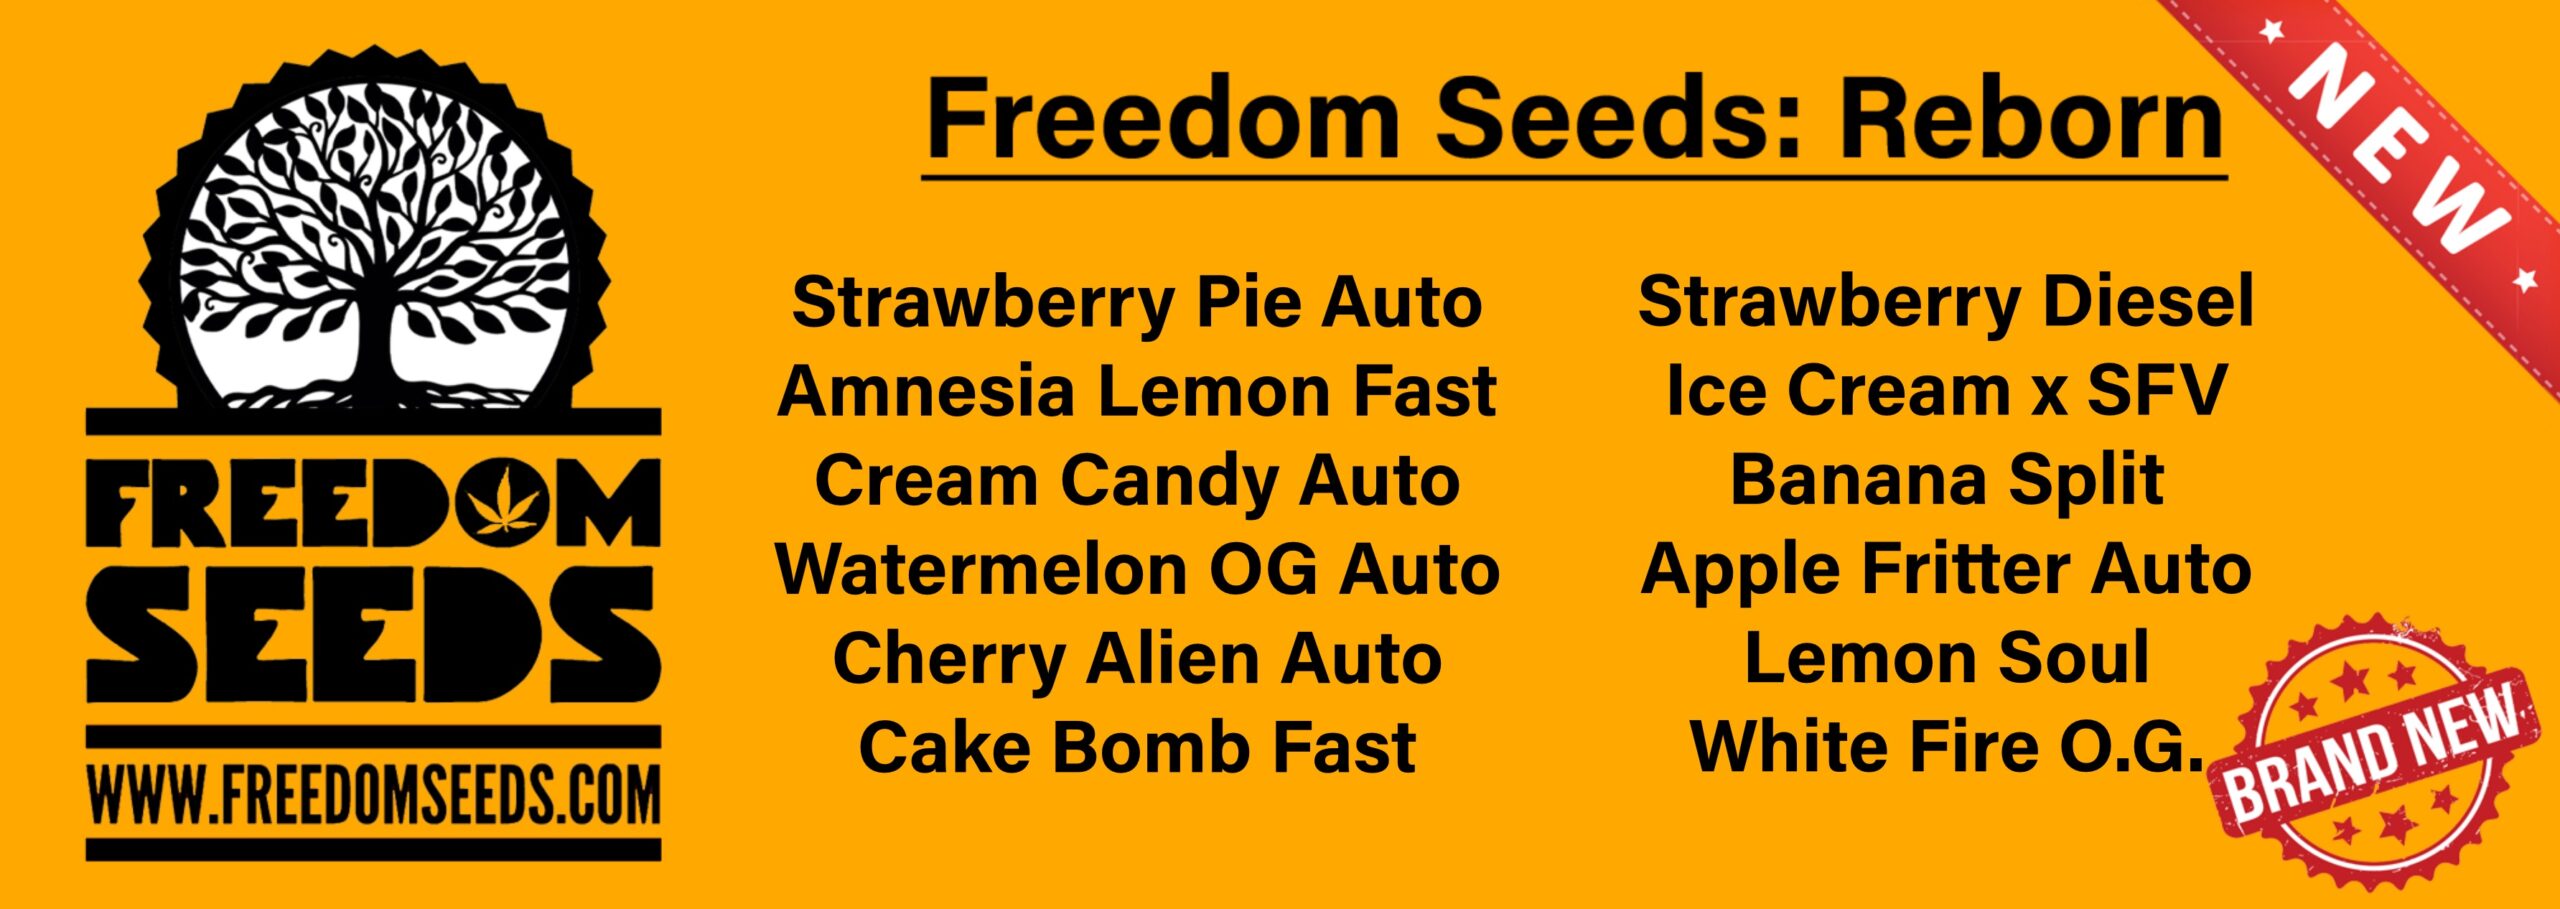 Freedom Seeds Reborn v2